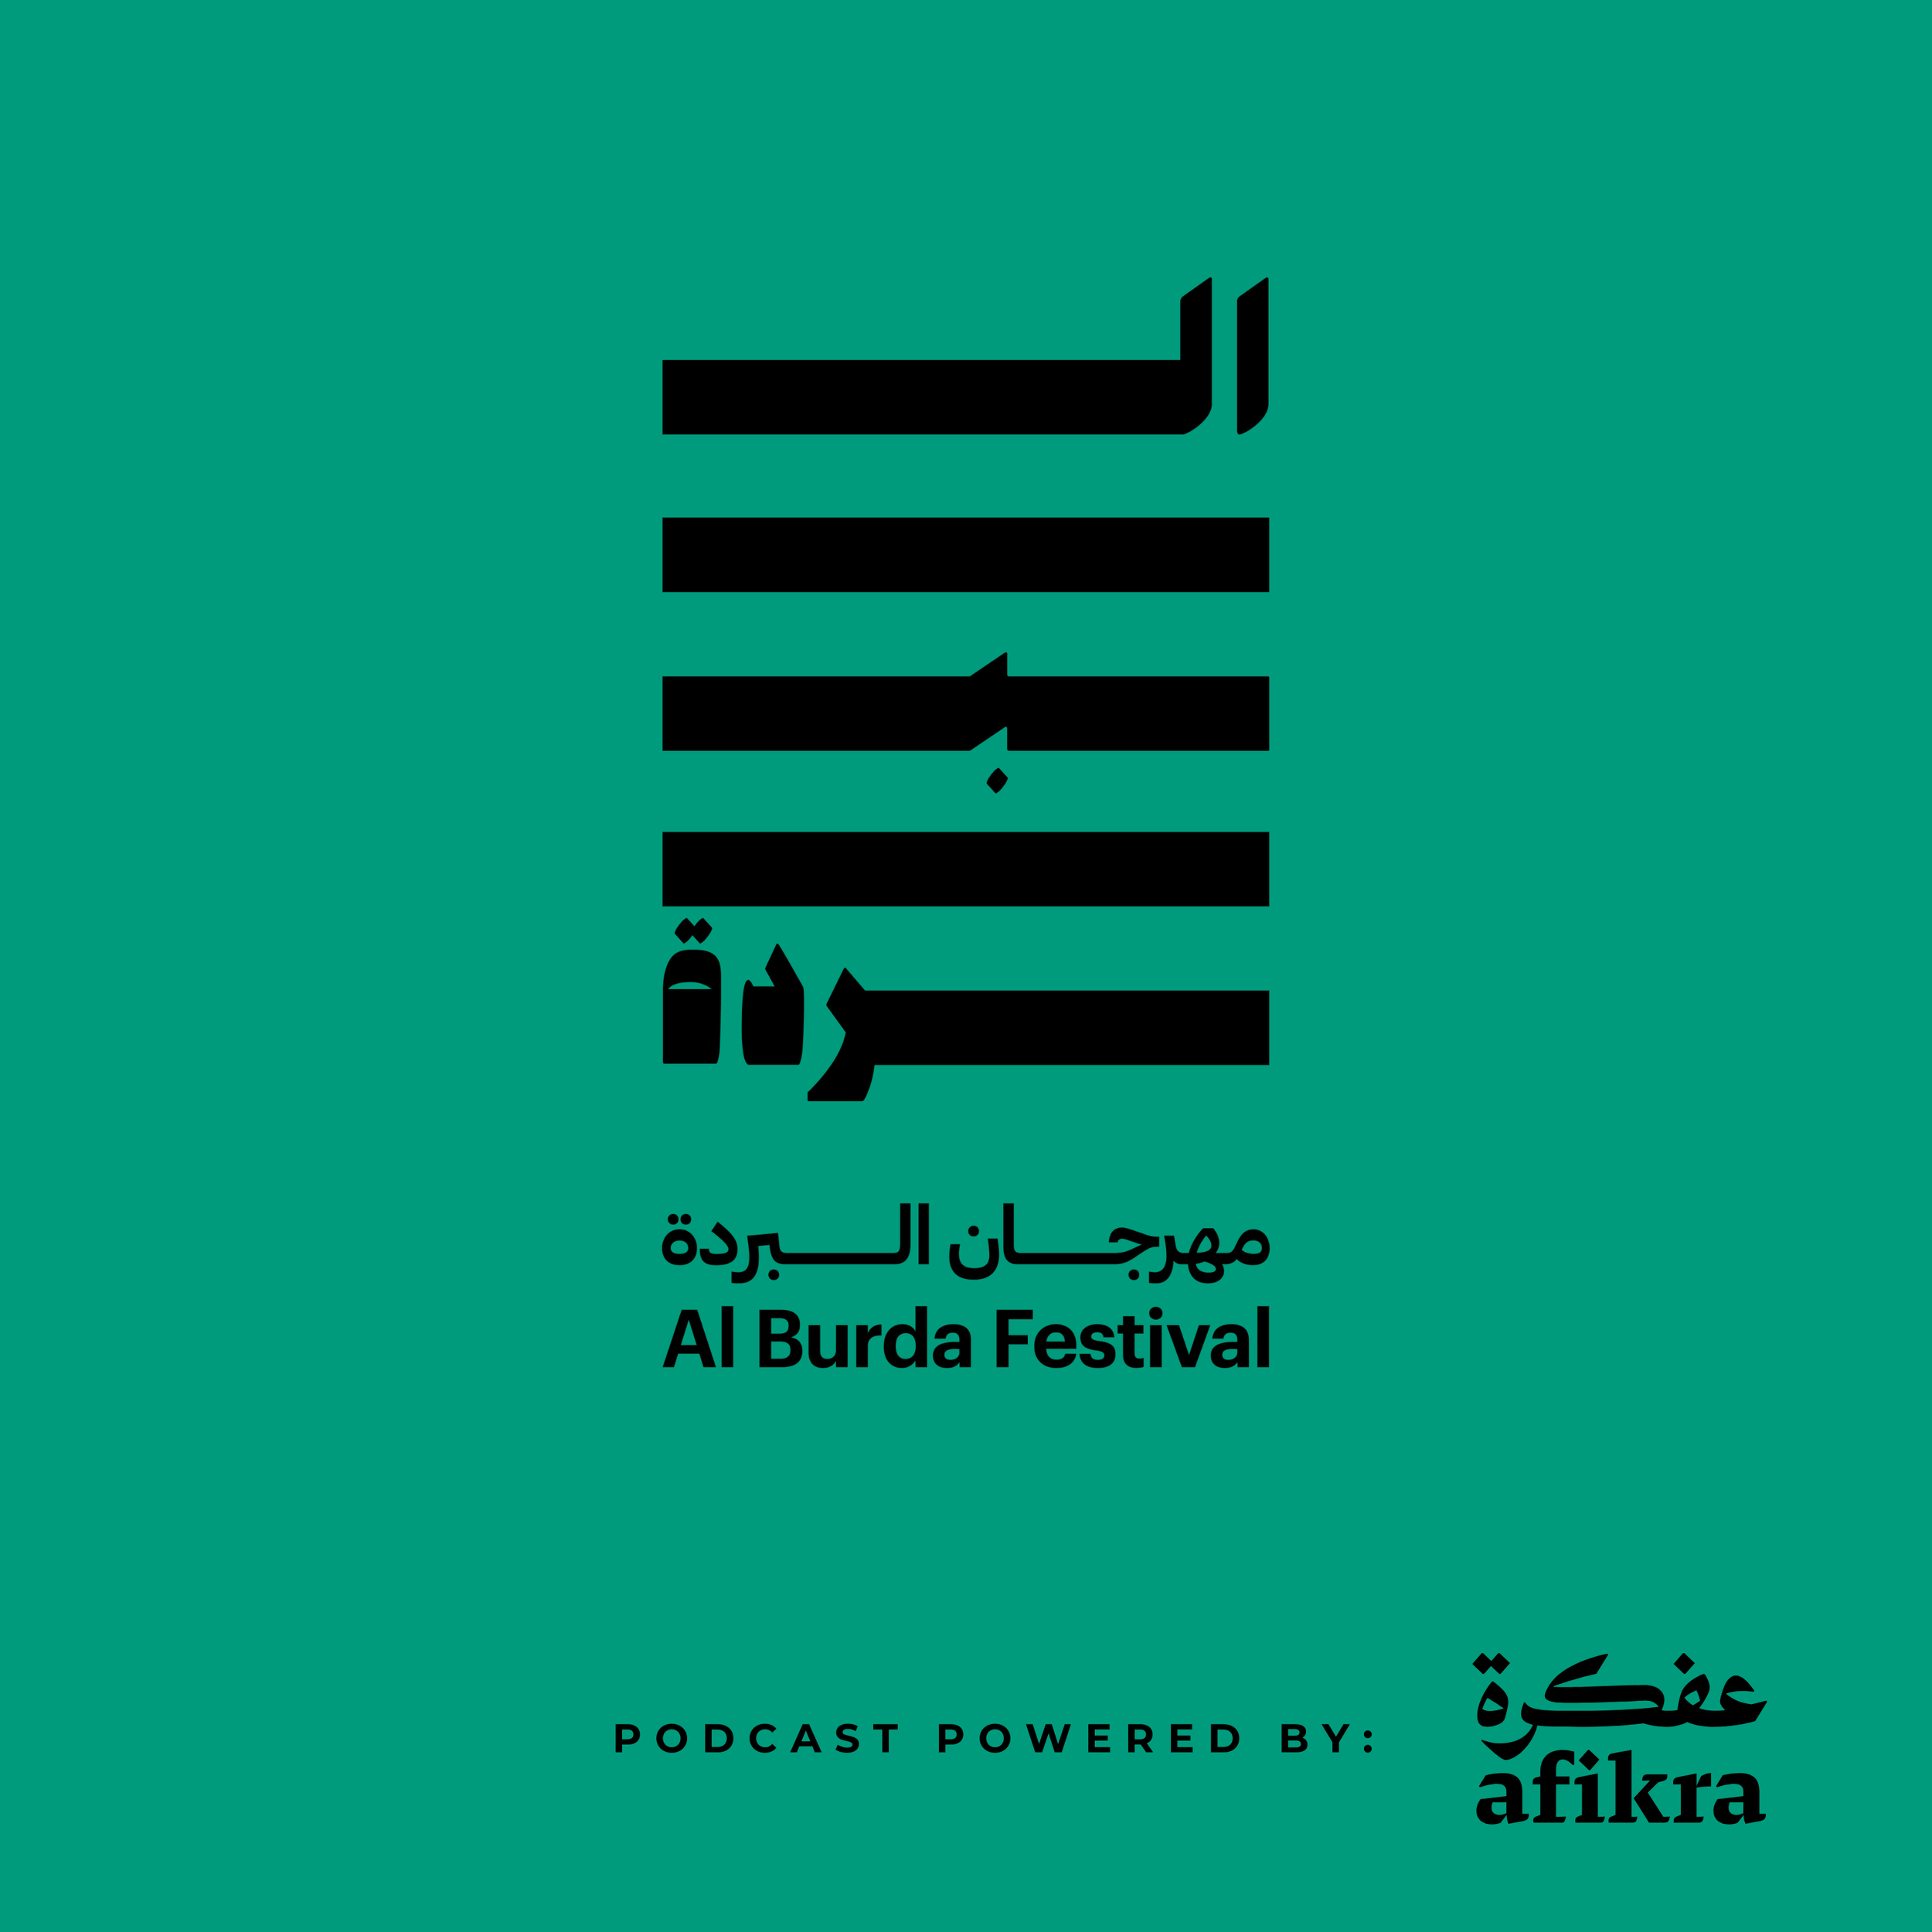 AL BURDA PODCAST | POWERED BY AFIKRA